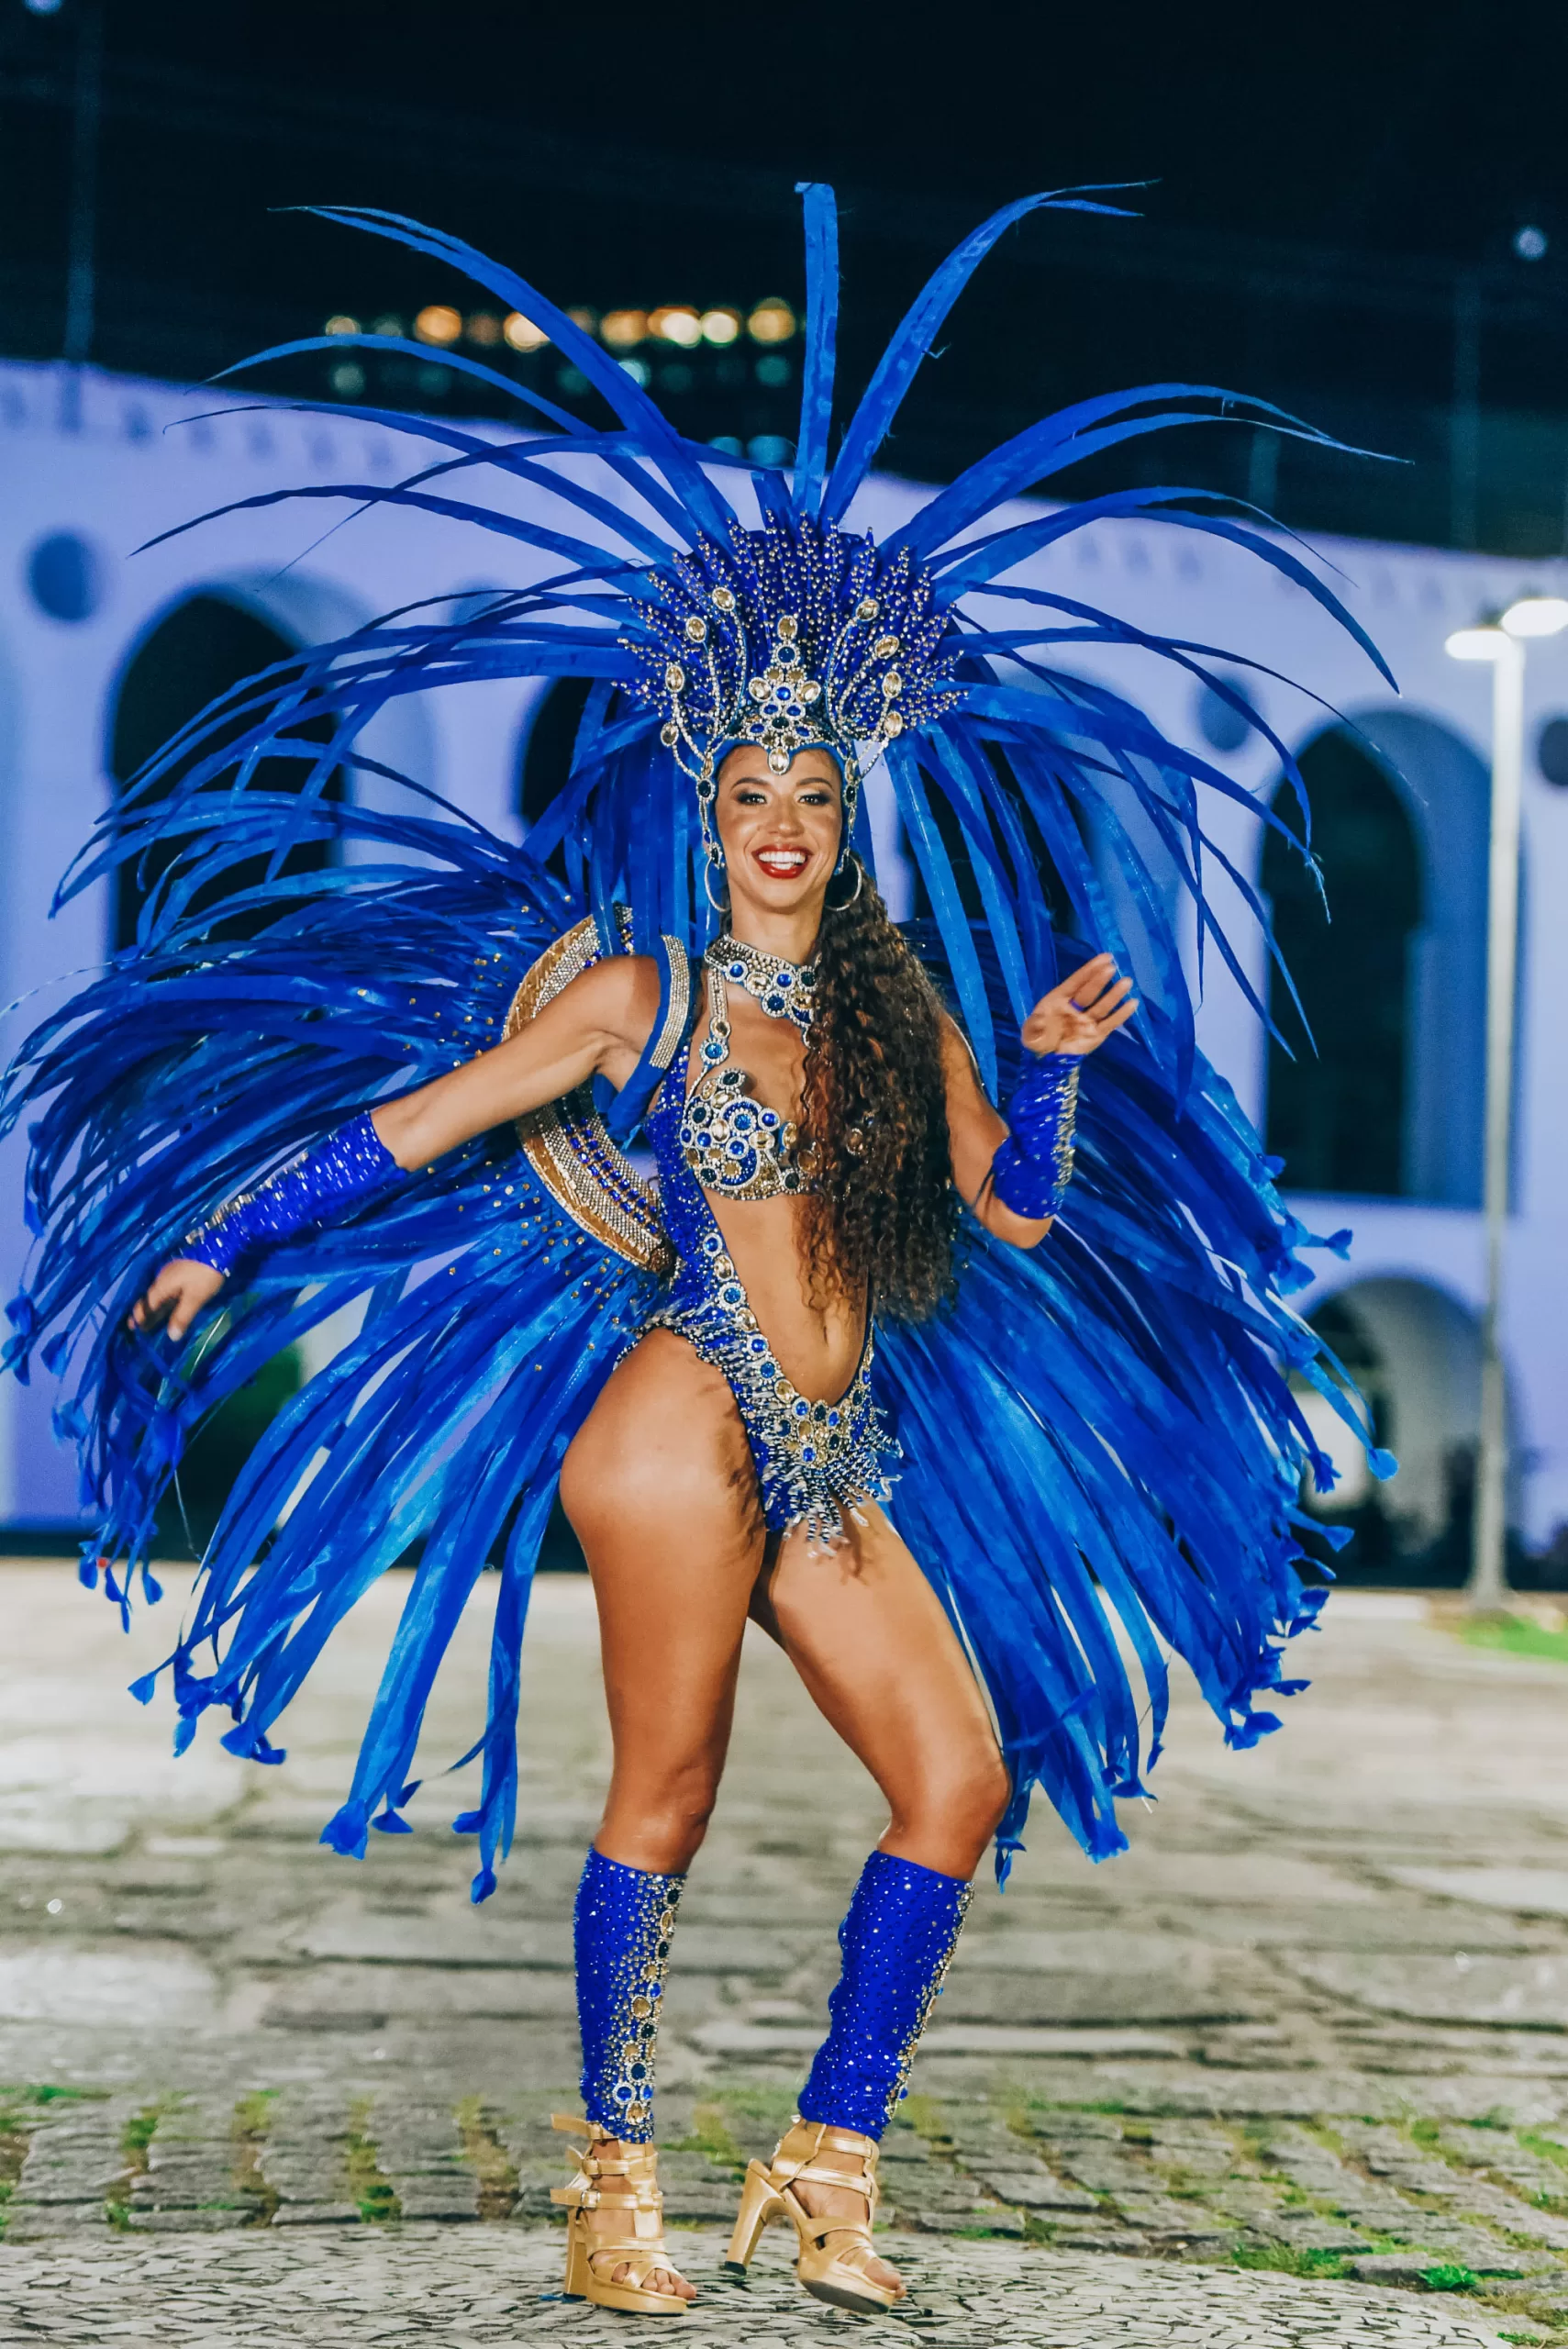 13 Fabulous Costumes From the Rio de Janeiro Carnival  Brazilian carnival  costumes, Rio carnival costumes, Rio carnival